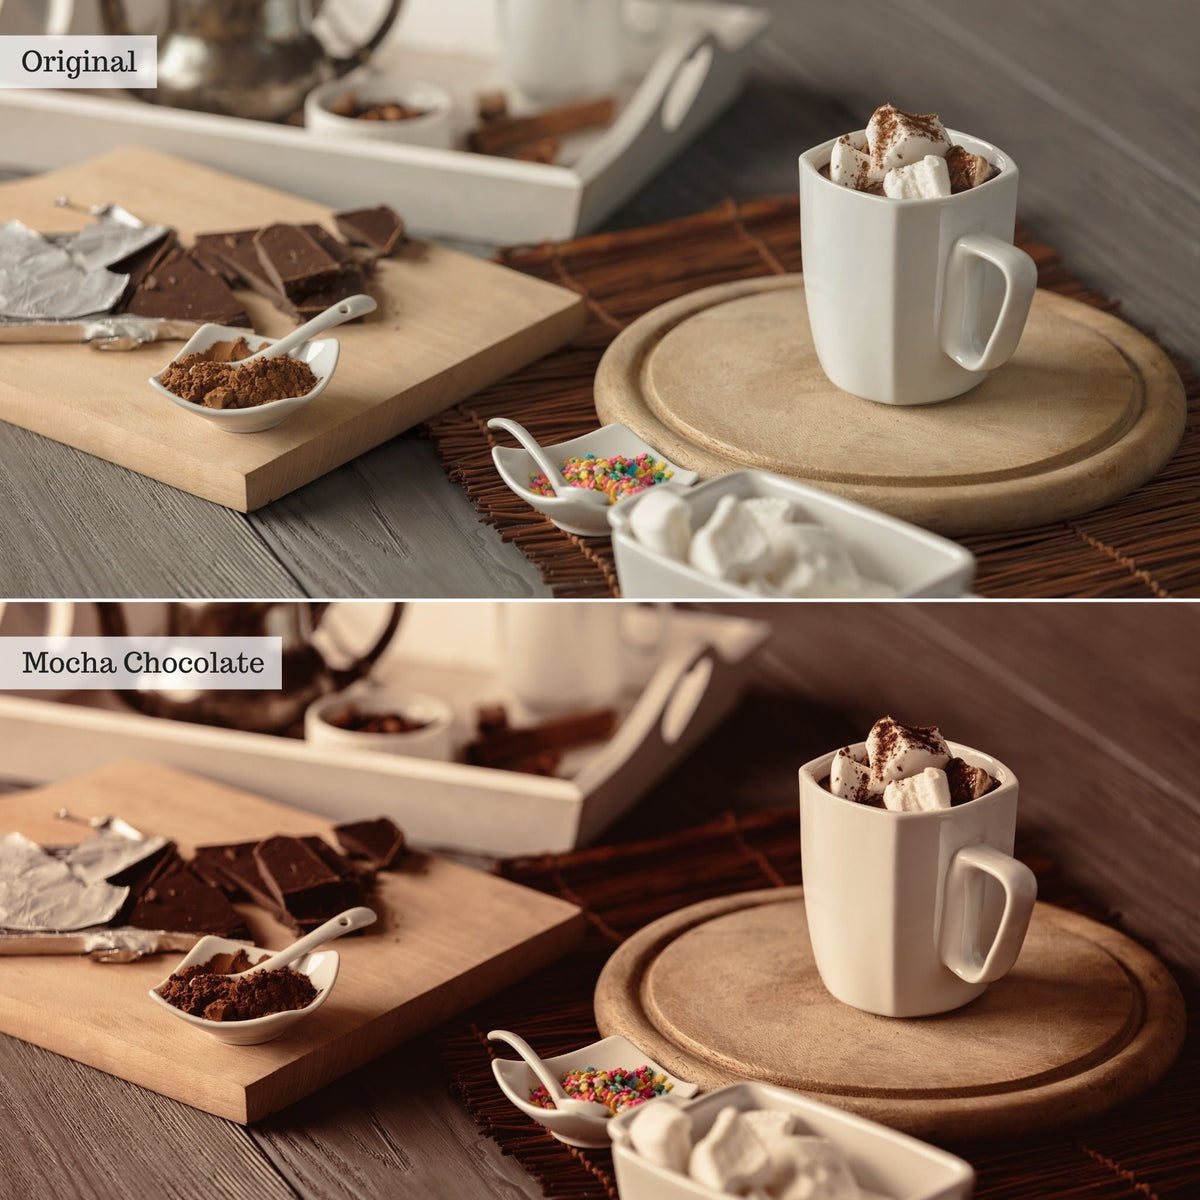 Mocha Chocolate Instagram Presets for Lightroom Mobile &amp; Desktop